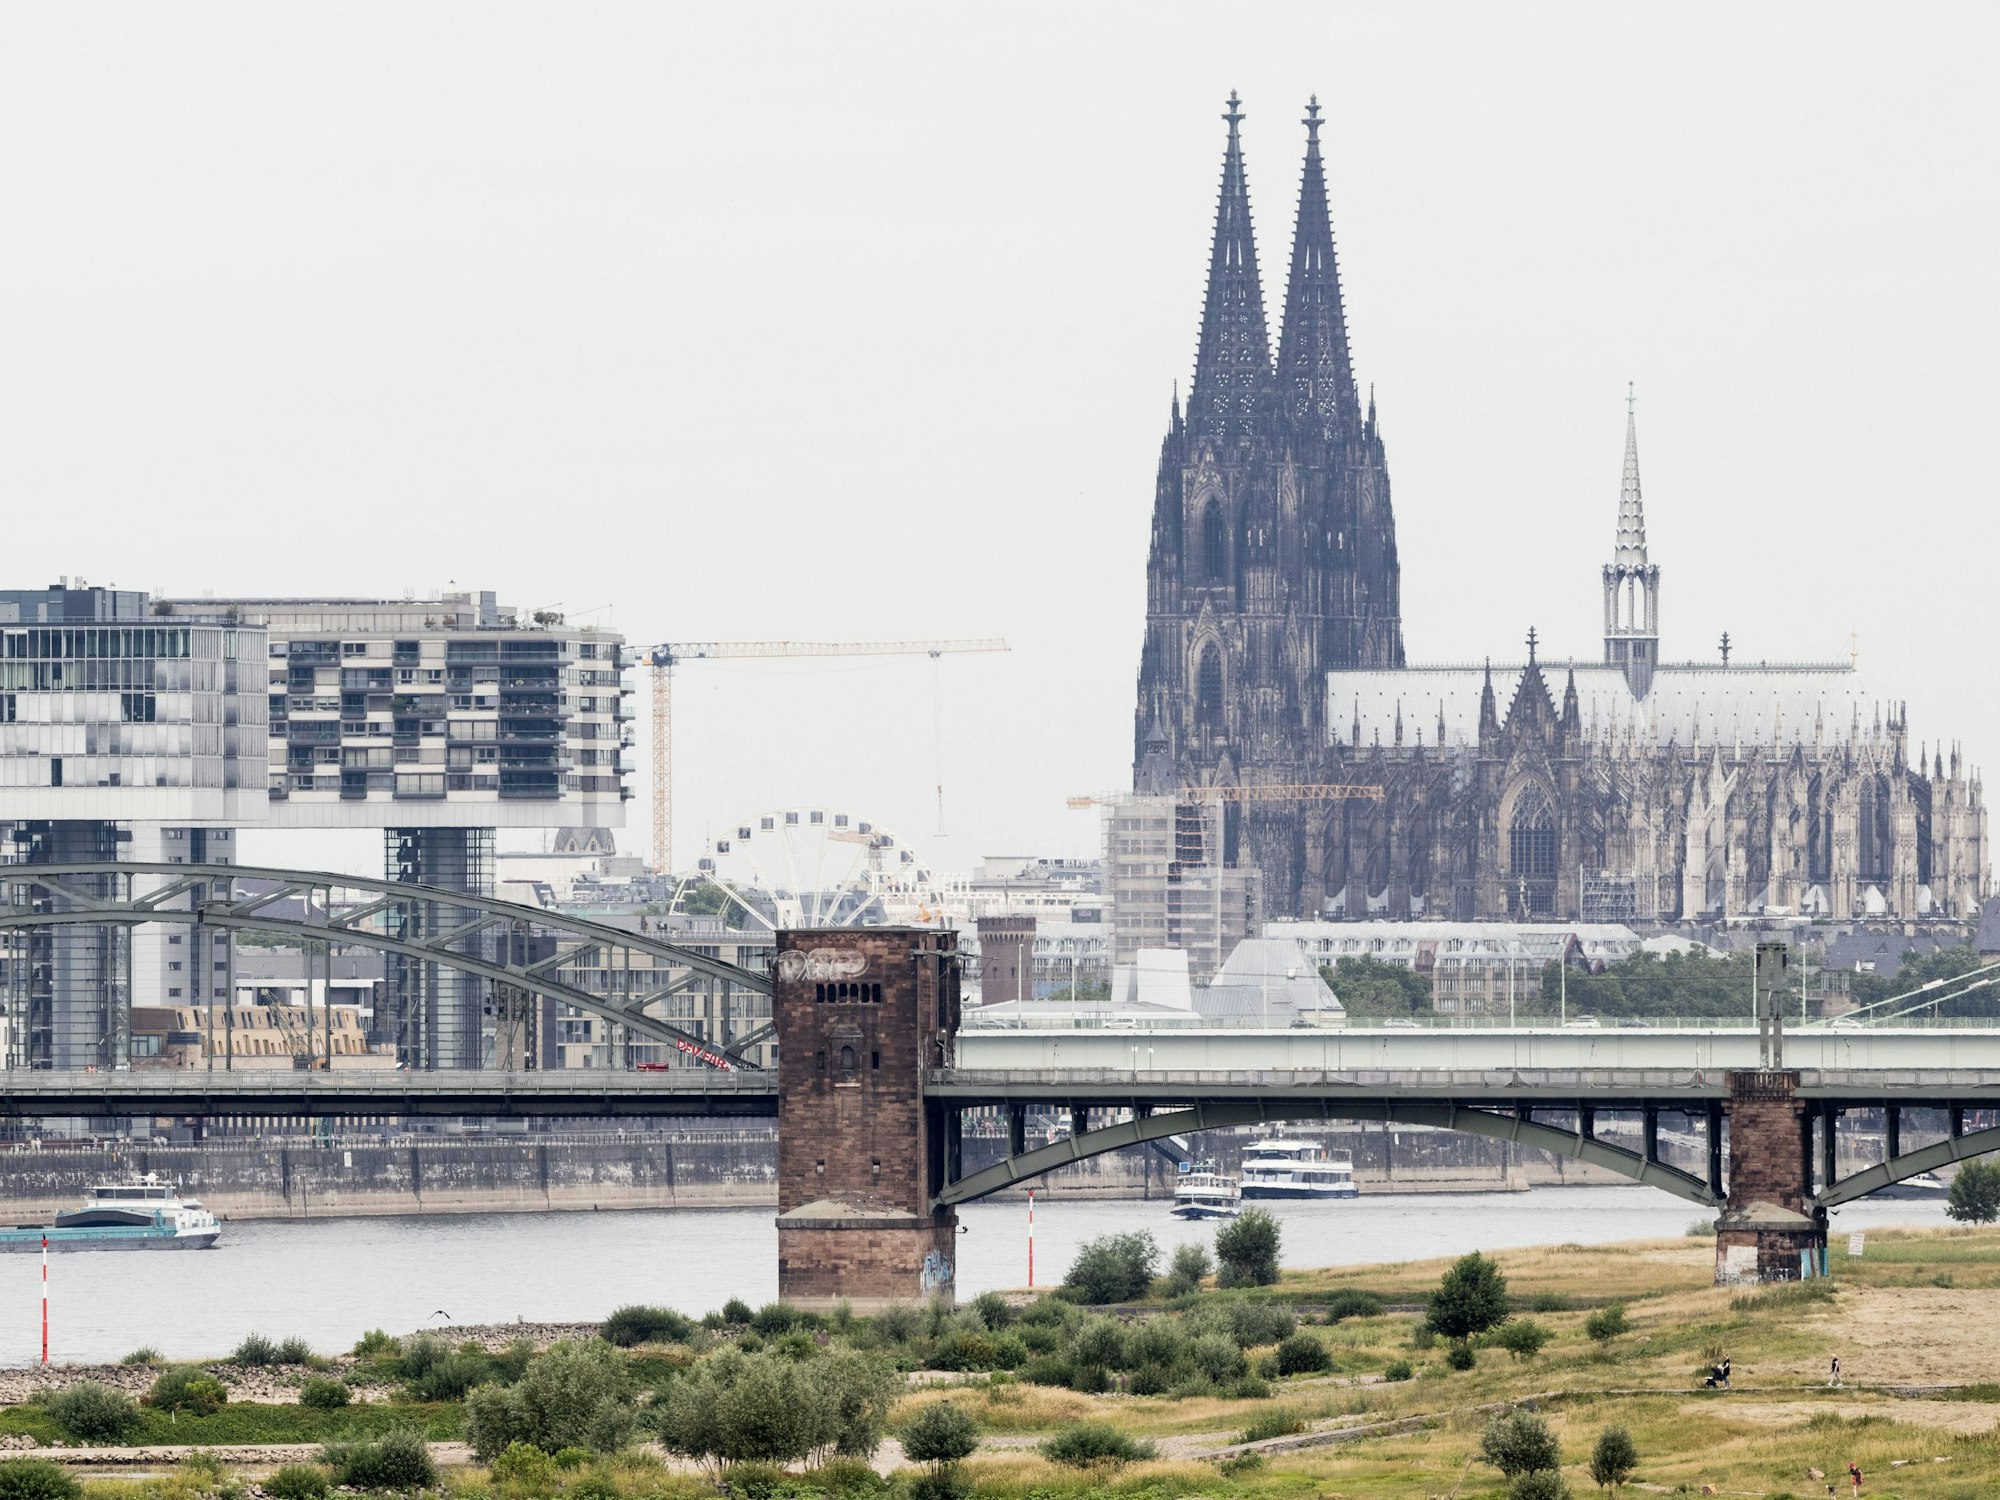 Blick auf den Rhein bei einem Pegel von 154cm - im Hintergrund ist der Kölner Dom zu sehen.